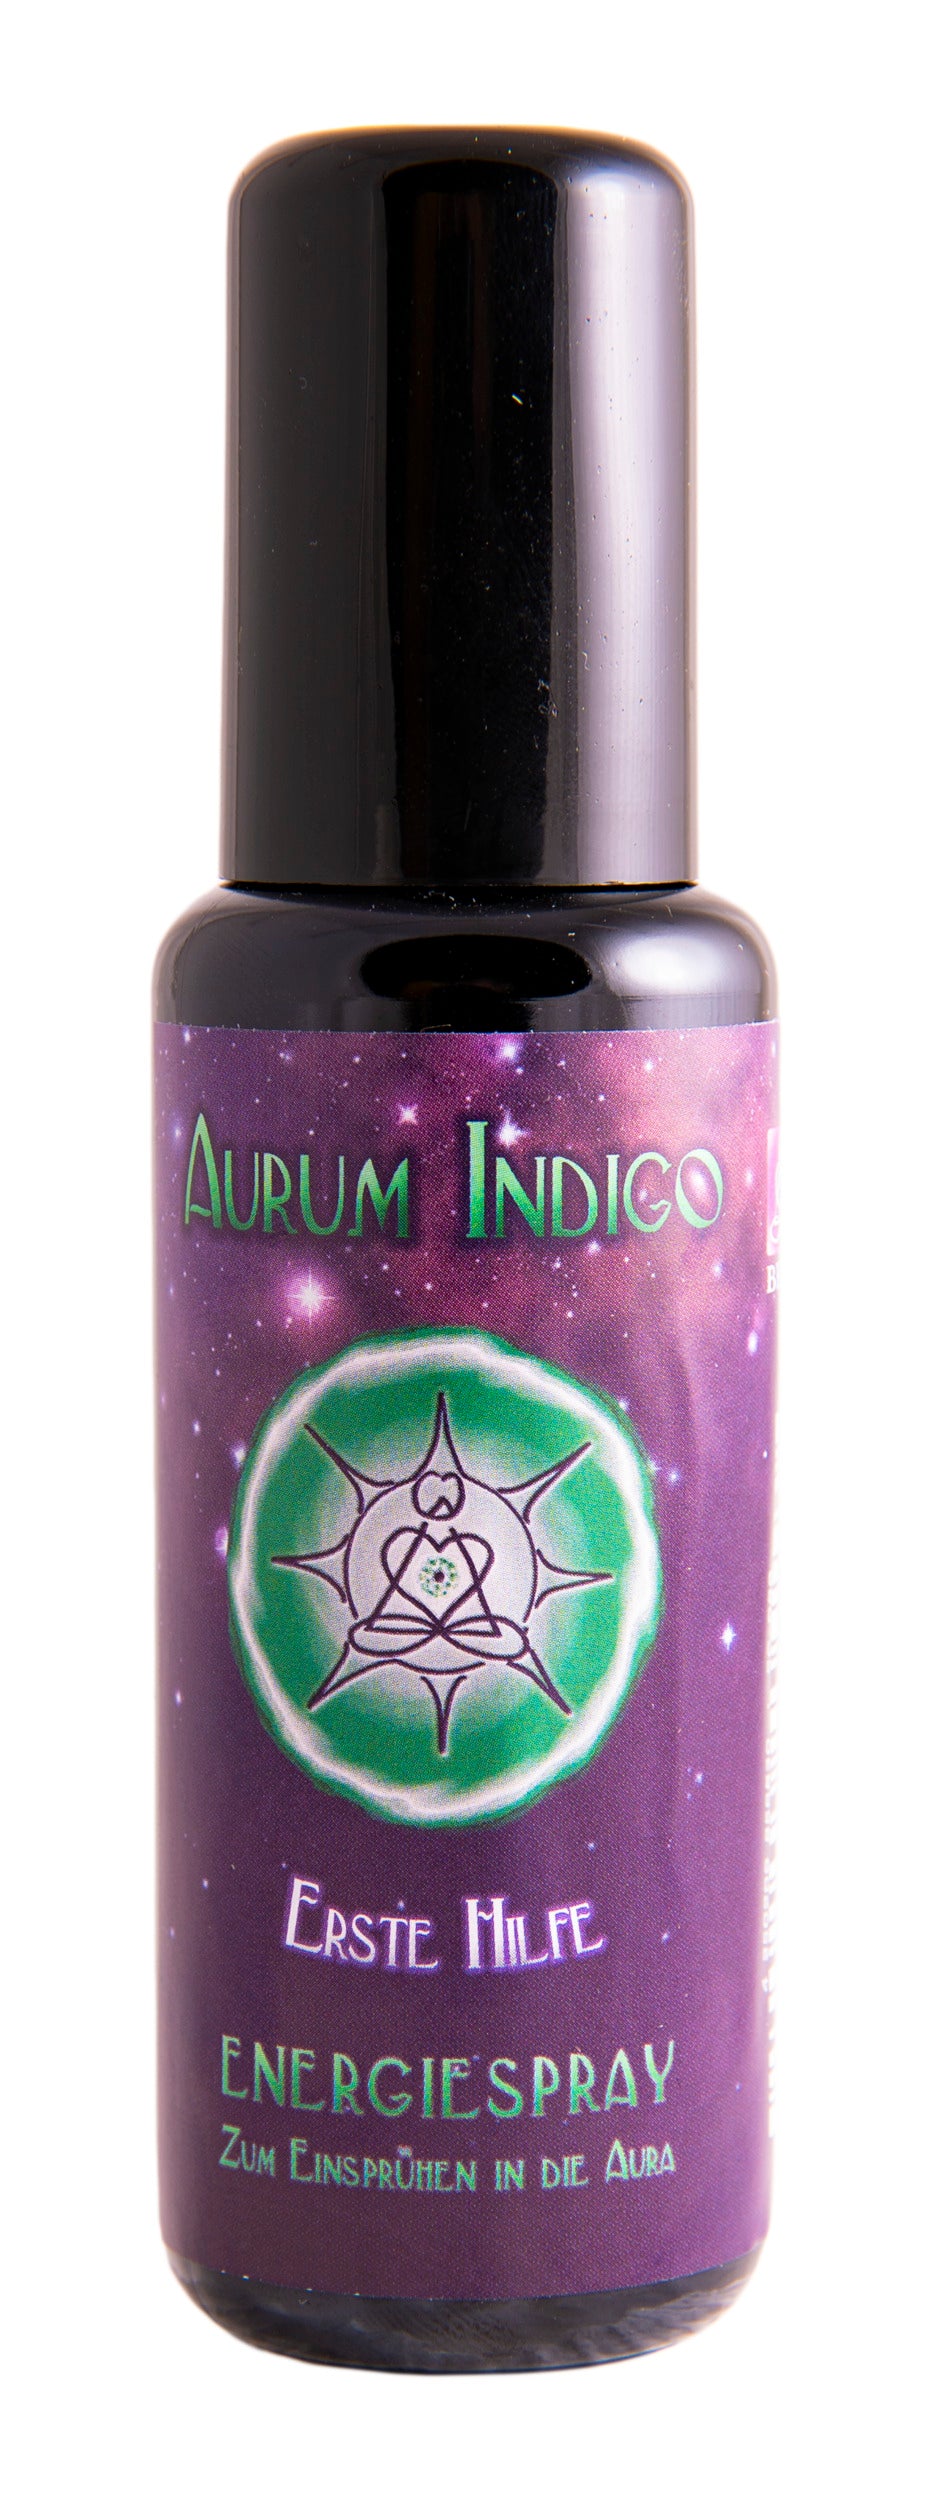 Holy Scents - Aurum Indigo - Erste Hilfe - Energiespray 50 ml